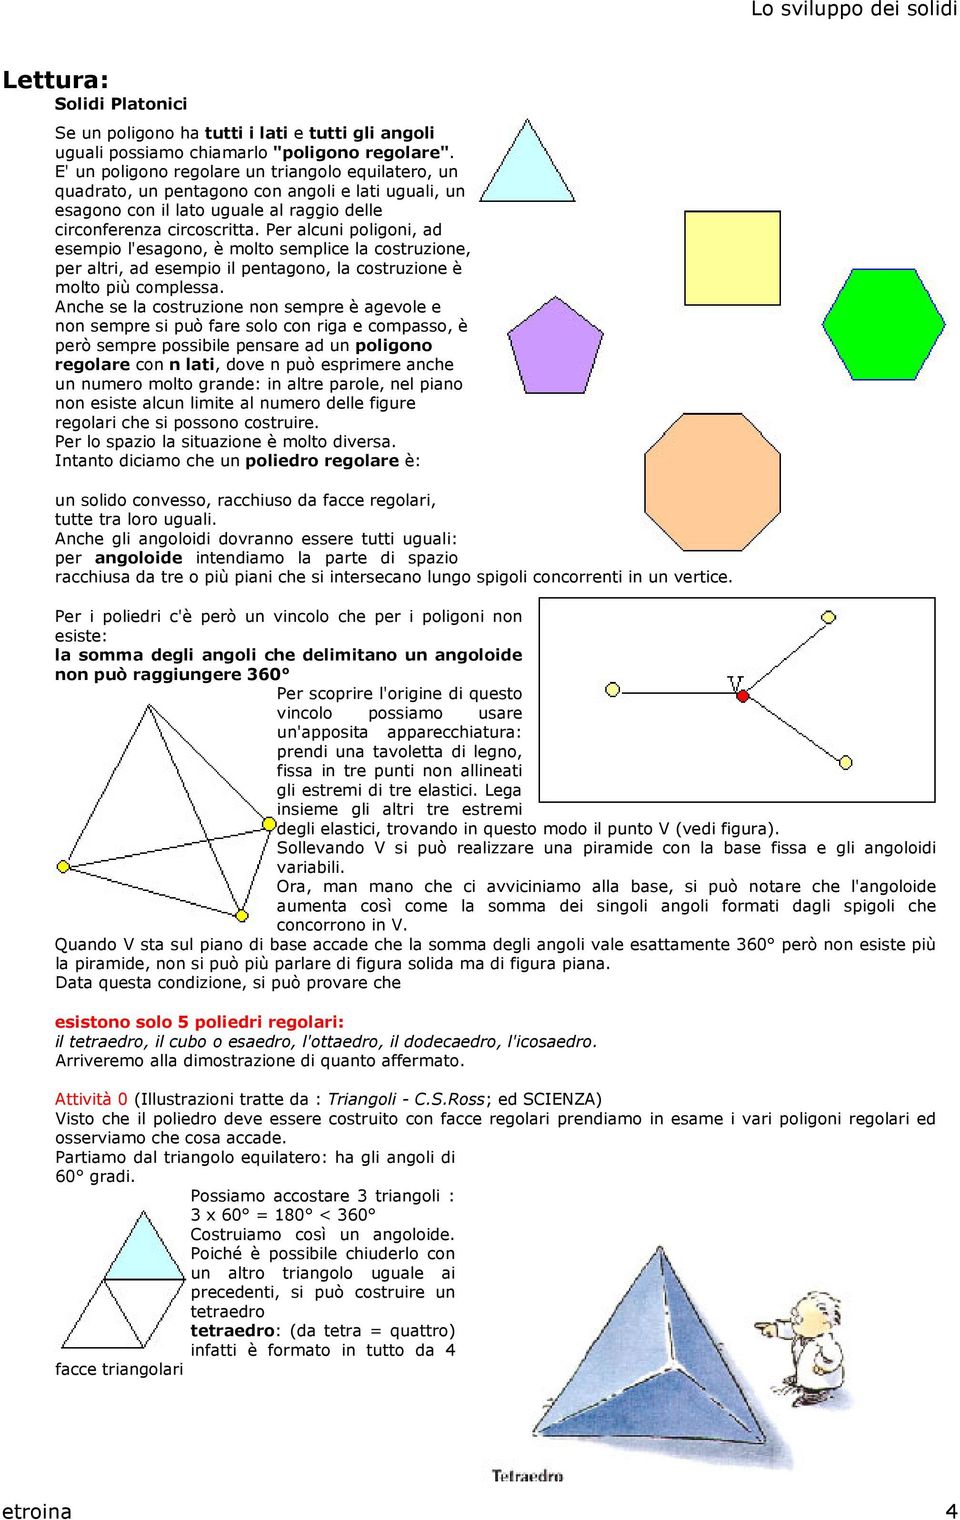 Per alcuni poligoni, ad esempio l'esagono, è molto semplice la costruzione, per altri, ad esempio il pentagono, la costruzione è molto più complessa.